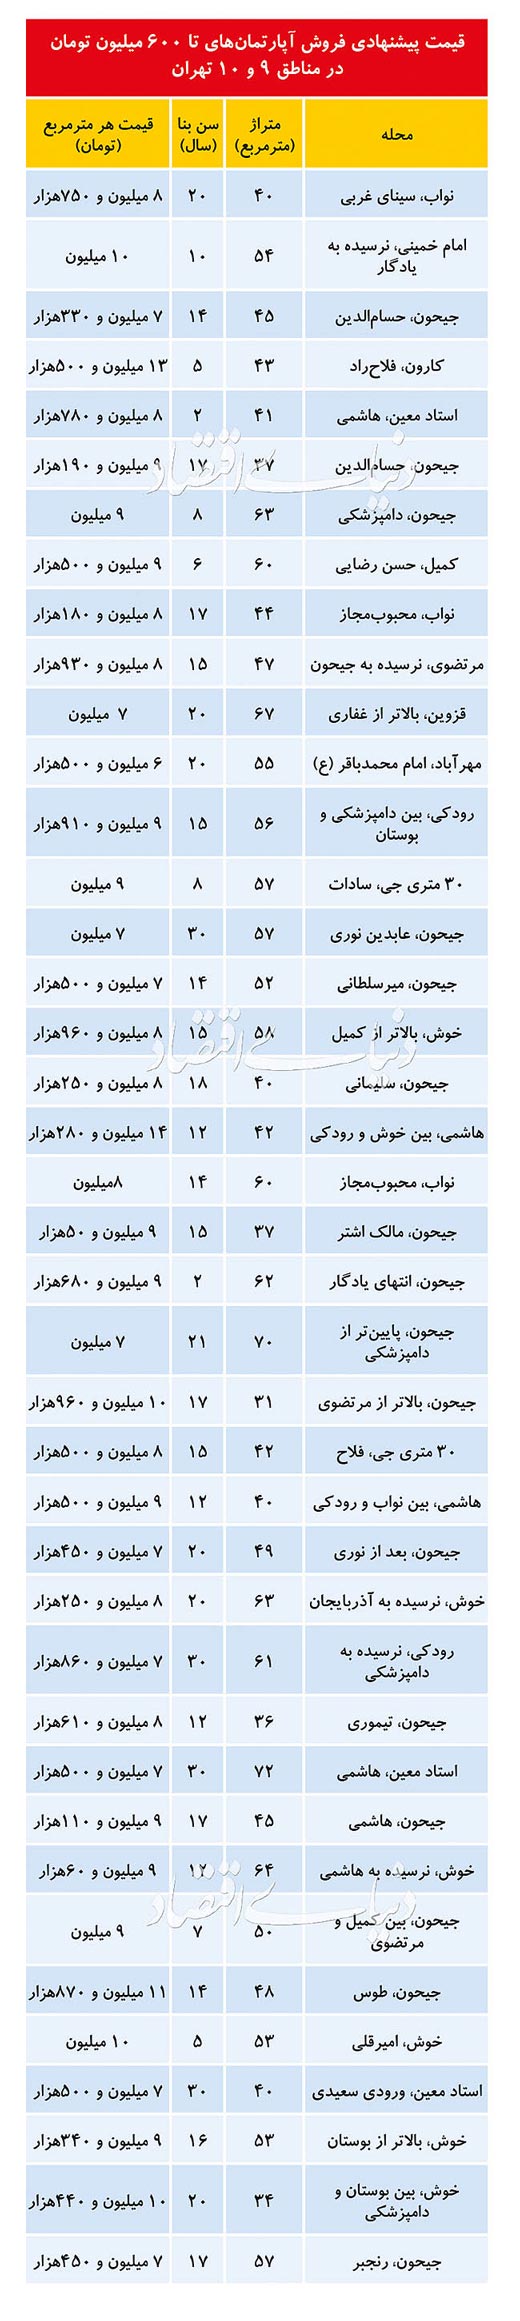 قیمت روز آپارتمان در مناطق ۹ و ۱۰ تهران